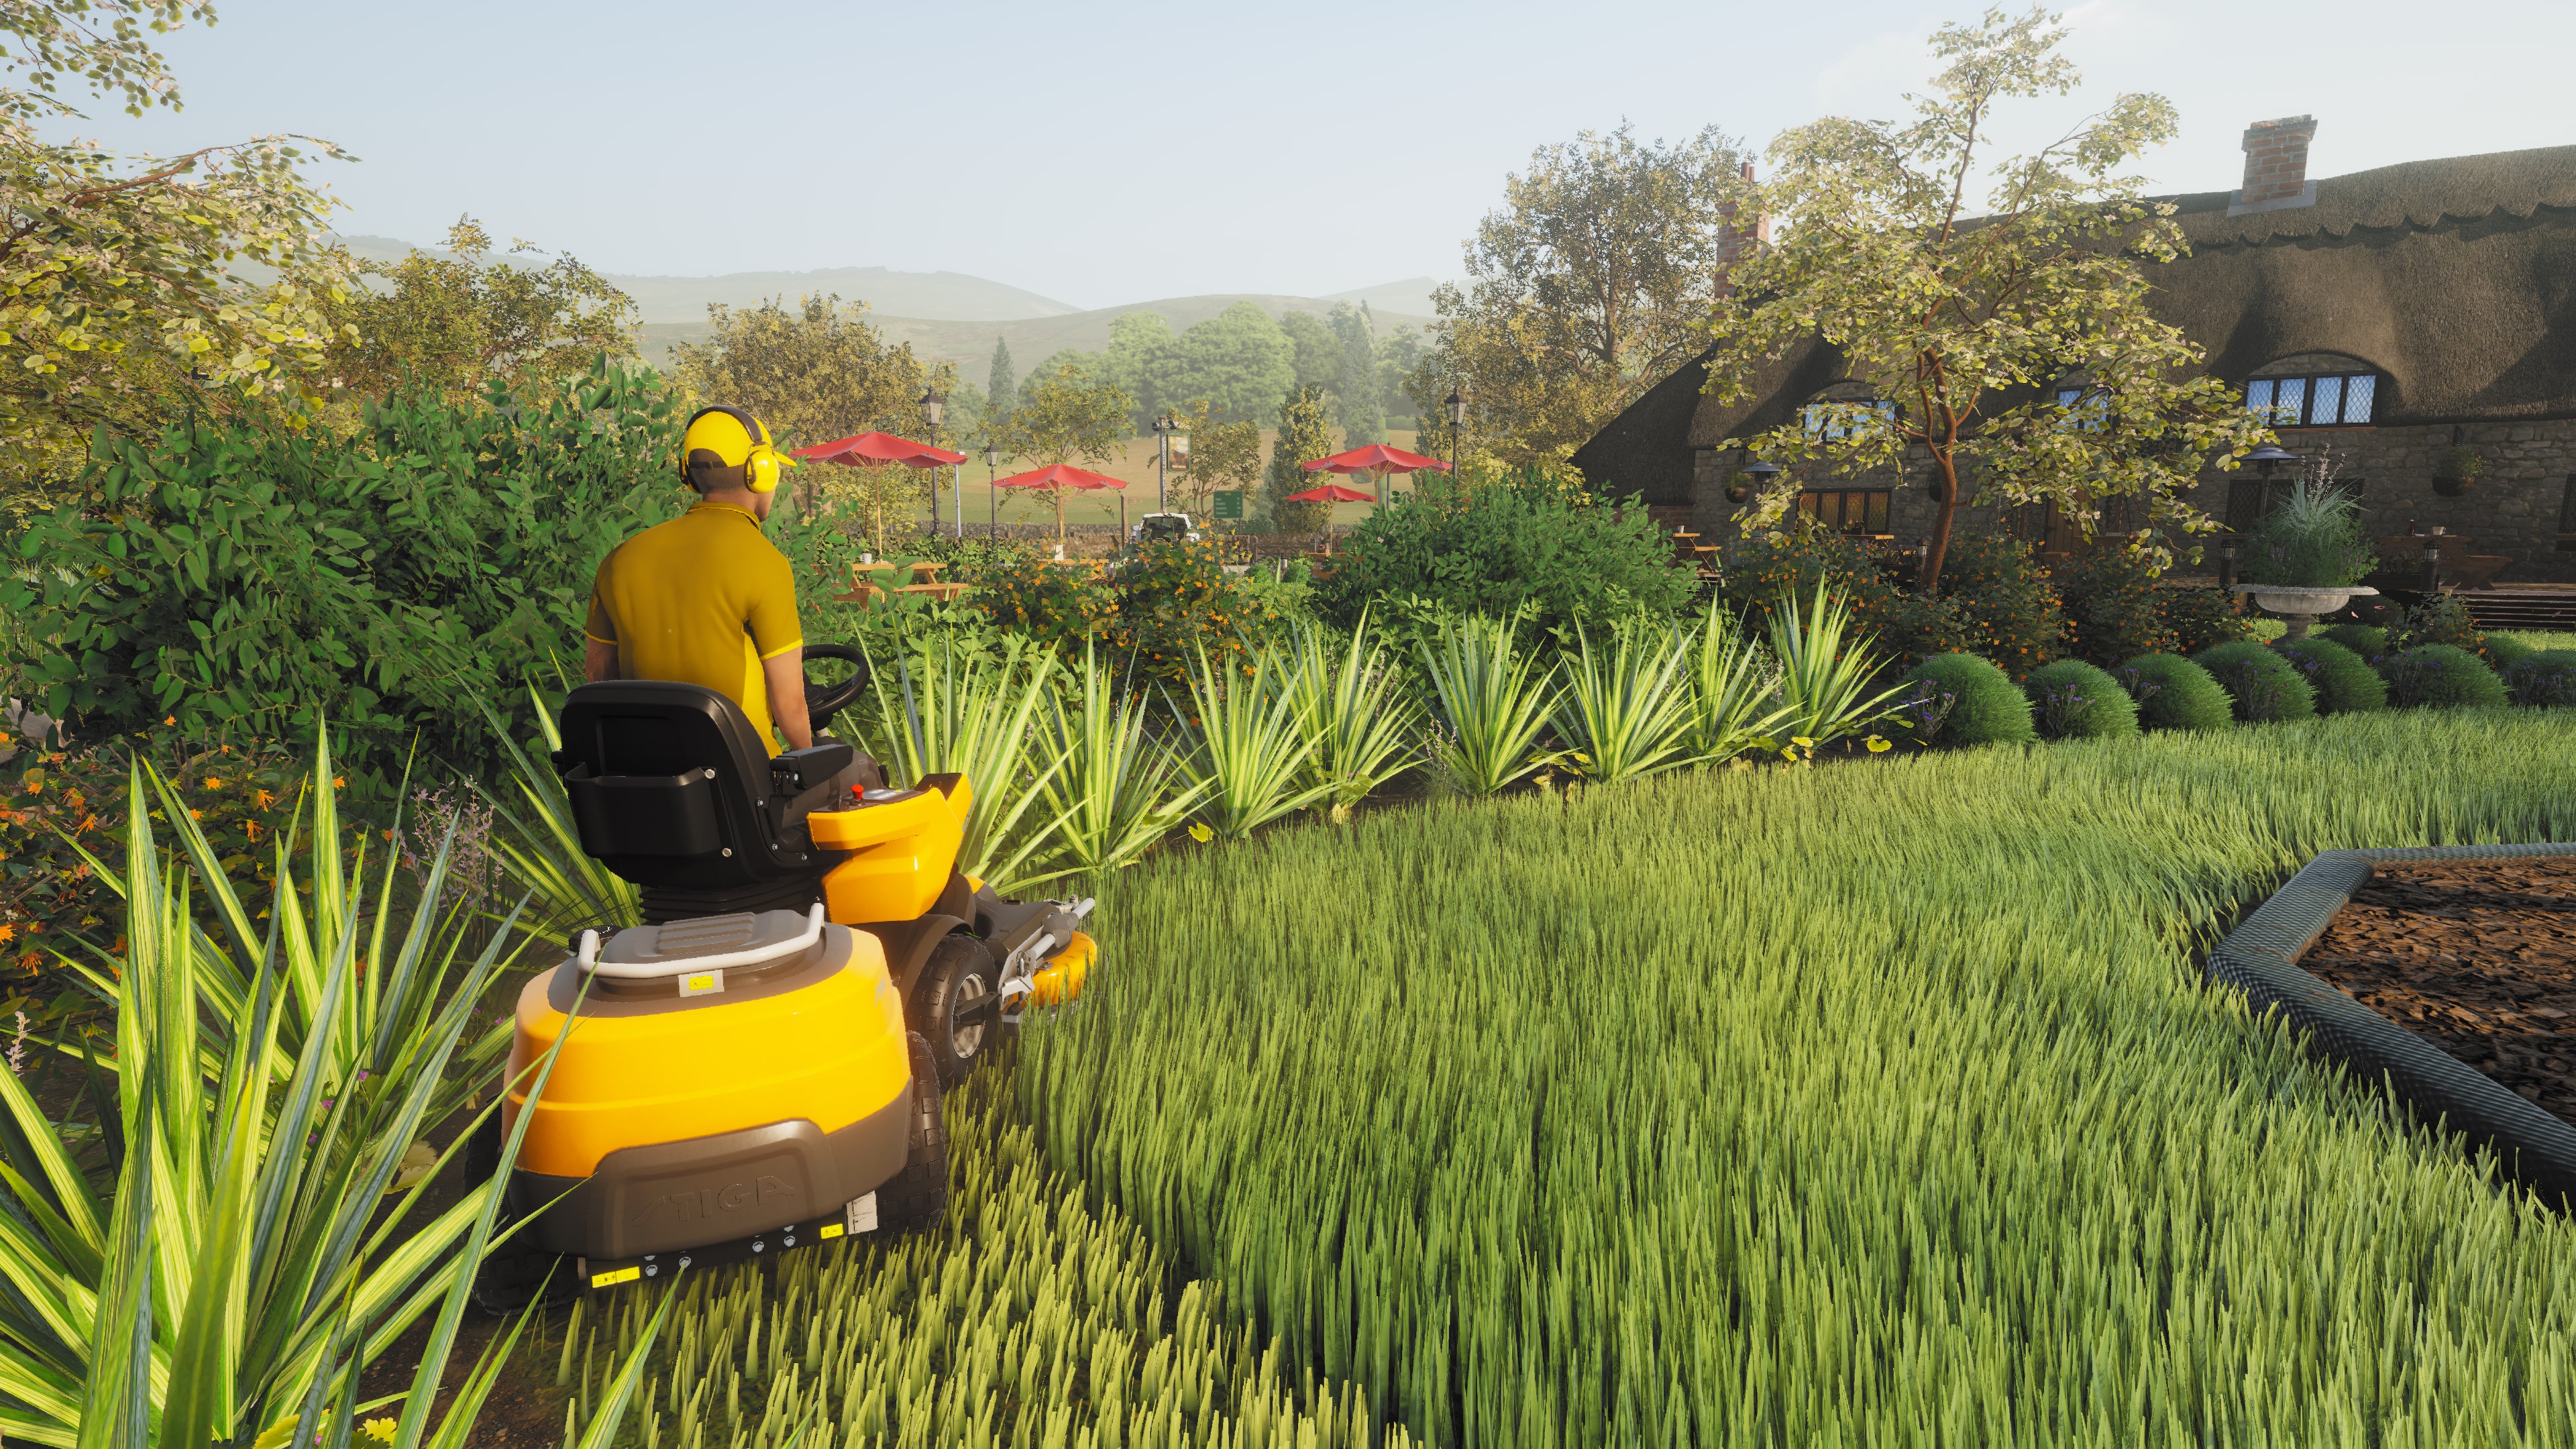 Lawn Mowing Simulator - Ancient Britain screenshot 43284